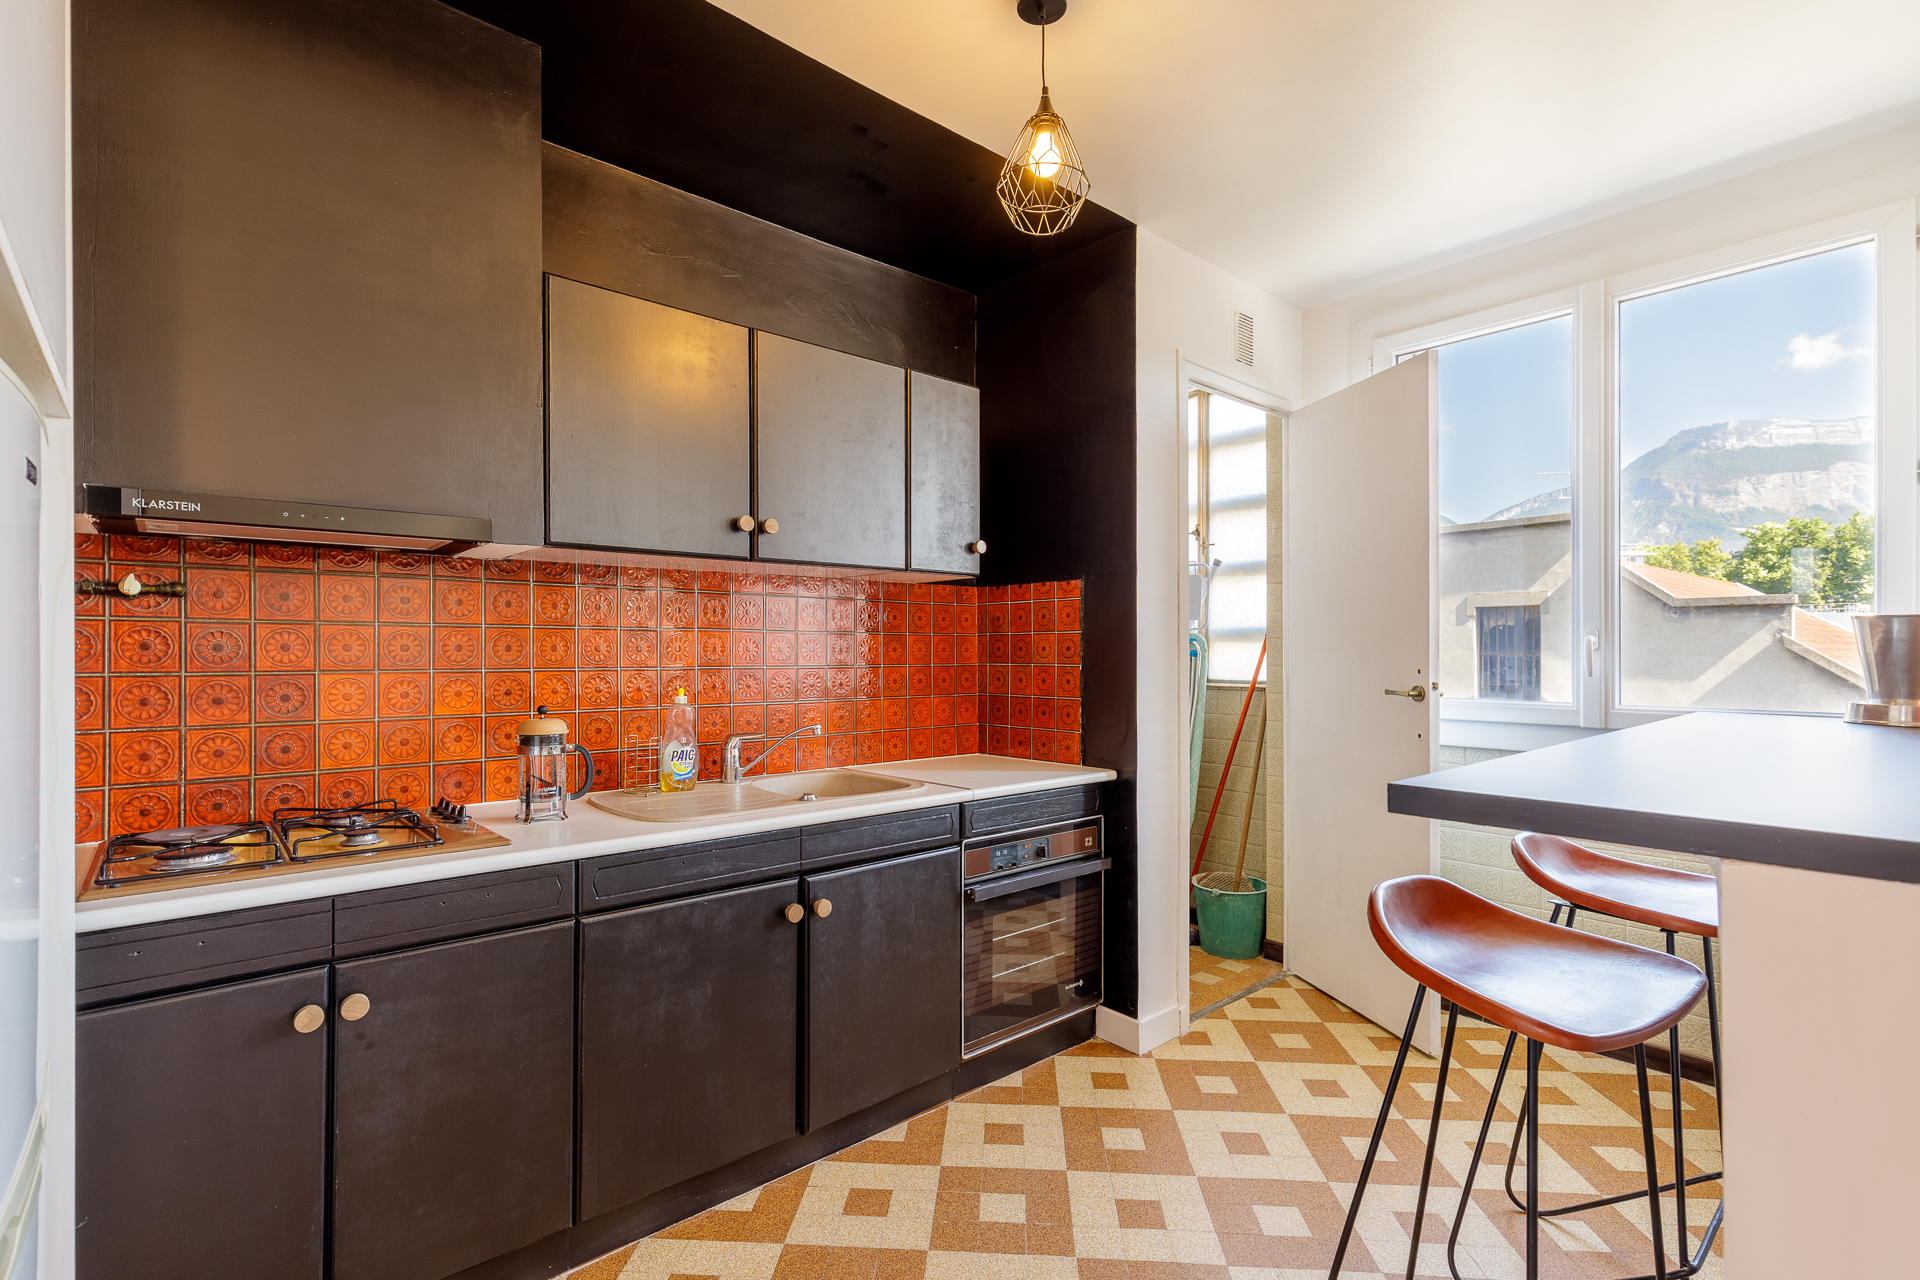 Photo immobilière d&apos;une cuisine rénovée dans un appartement à grenoble, dans l&apos;isère.